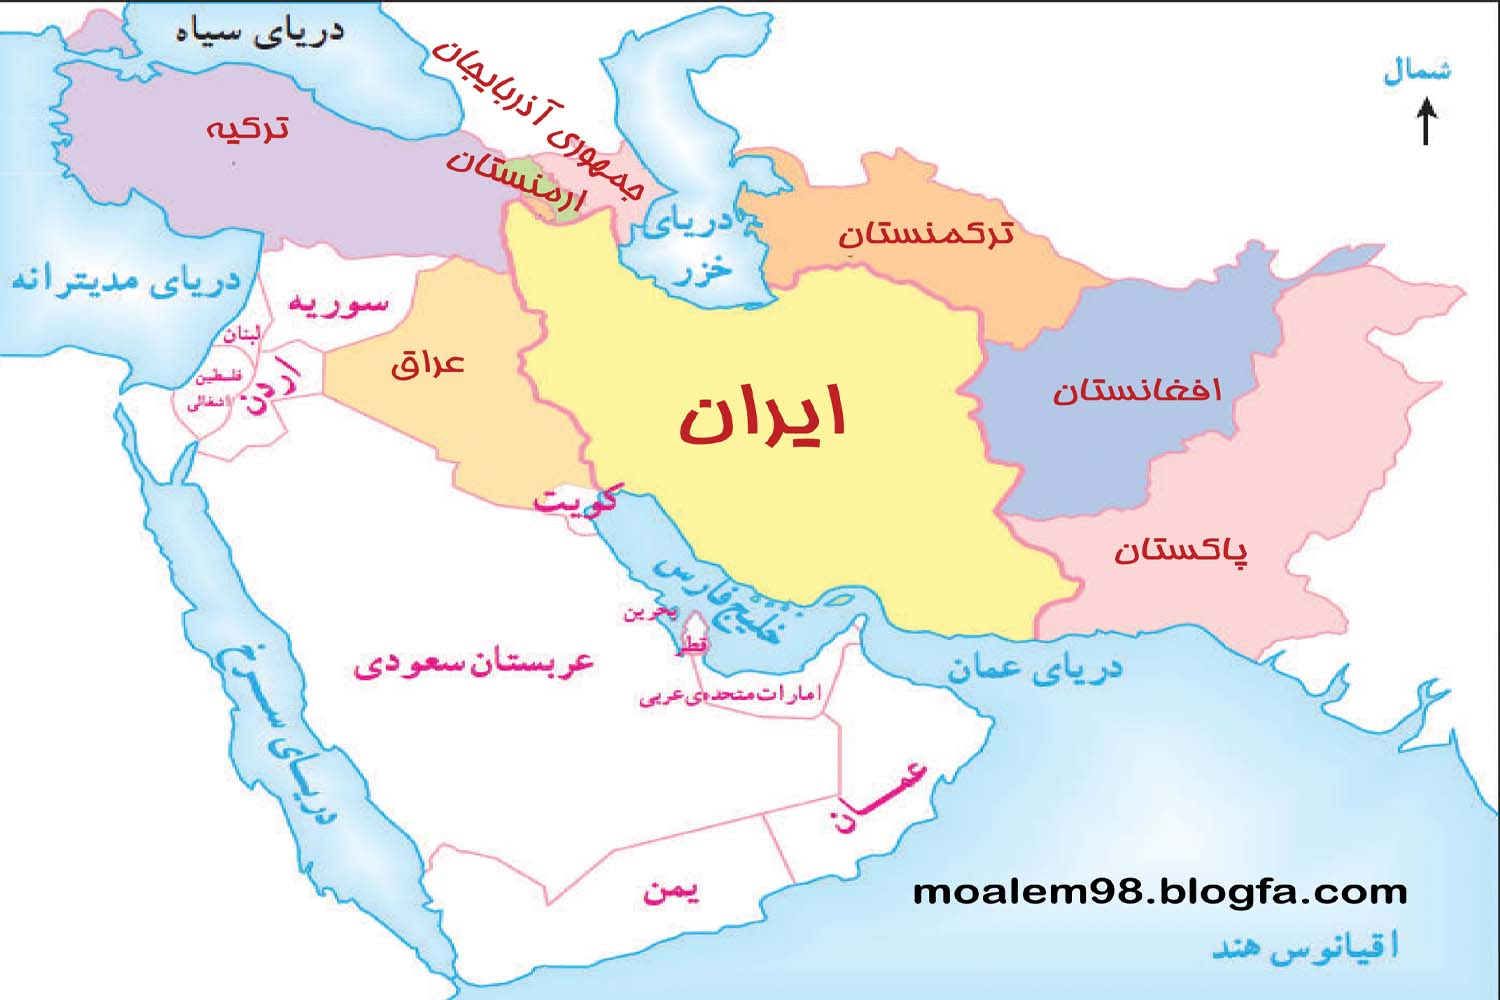 چرا ایران تحریم پذیر نیست؟/ اجرای سریع طرح توانمندسازی استانهای مرزی